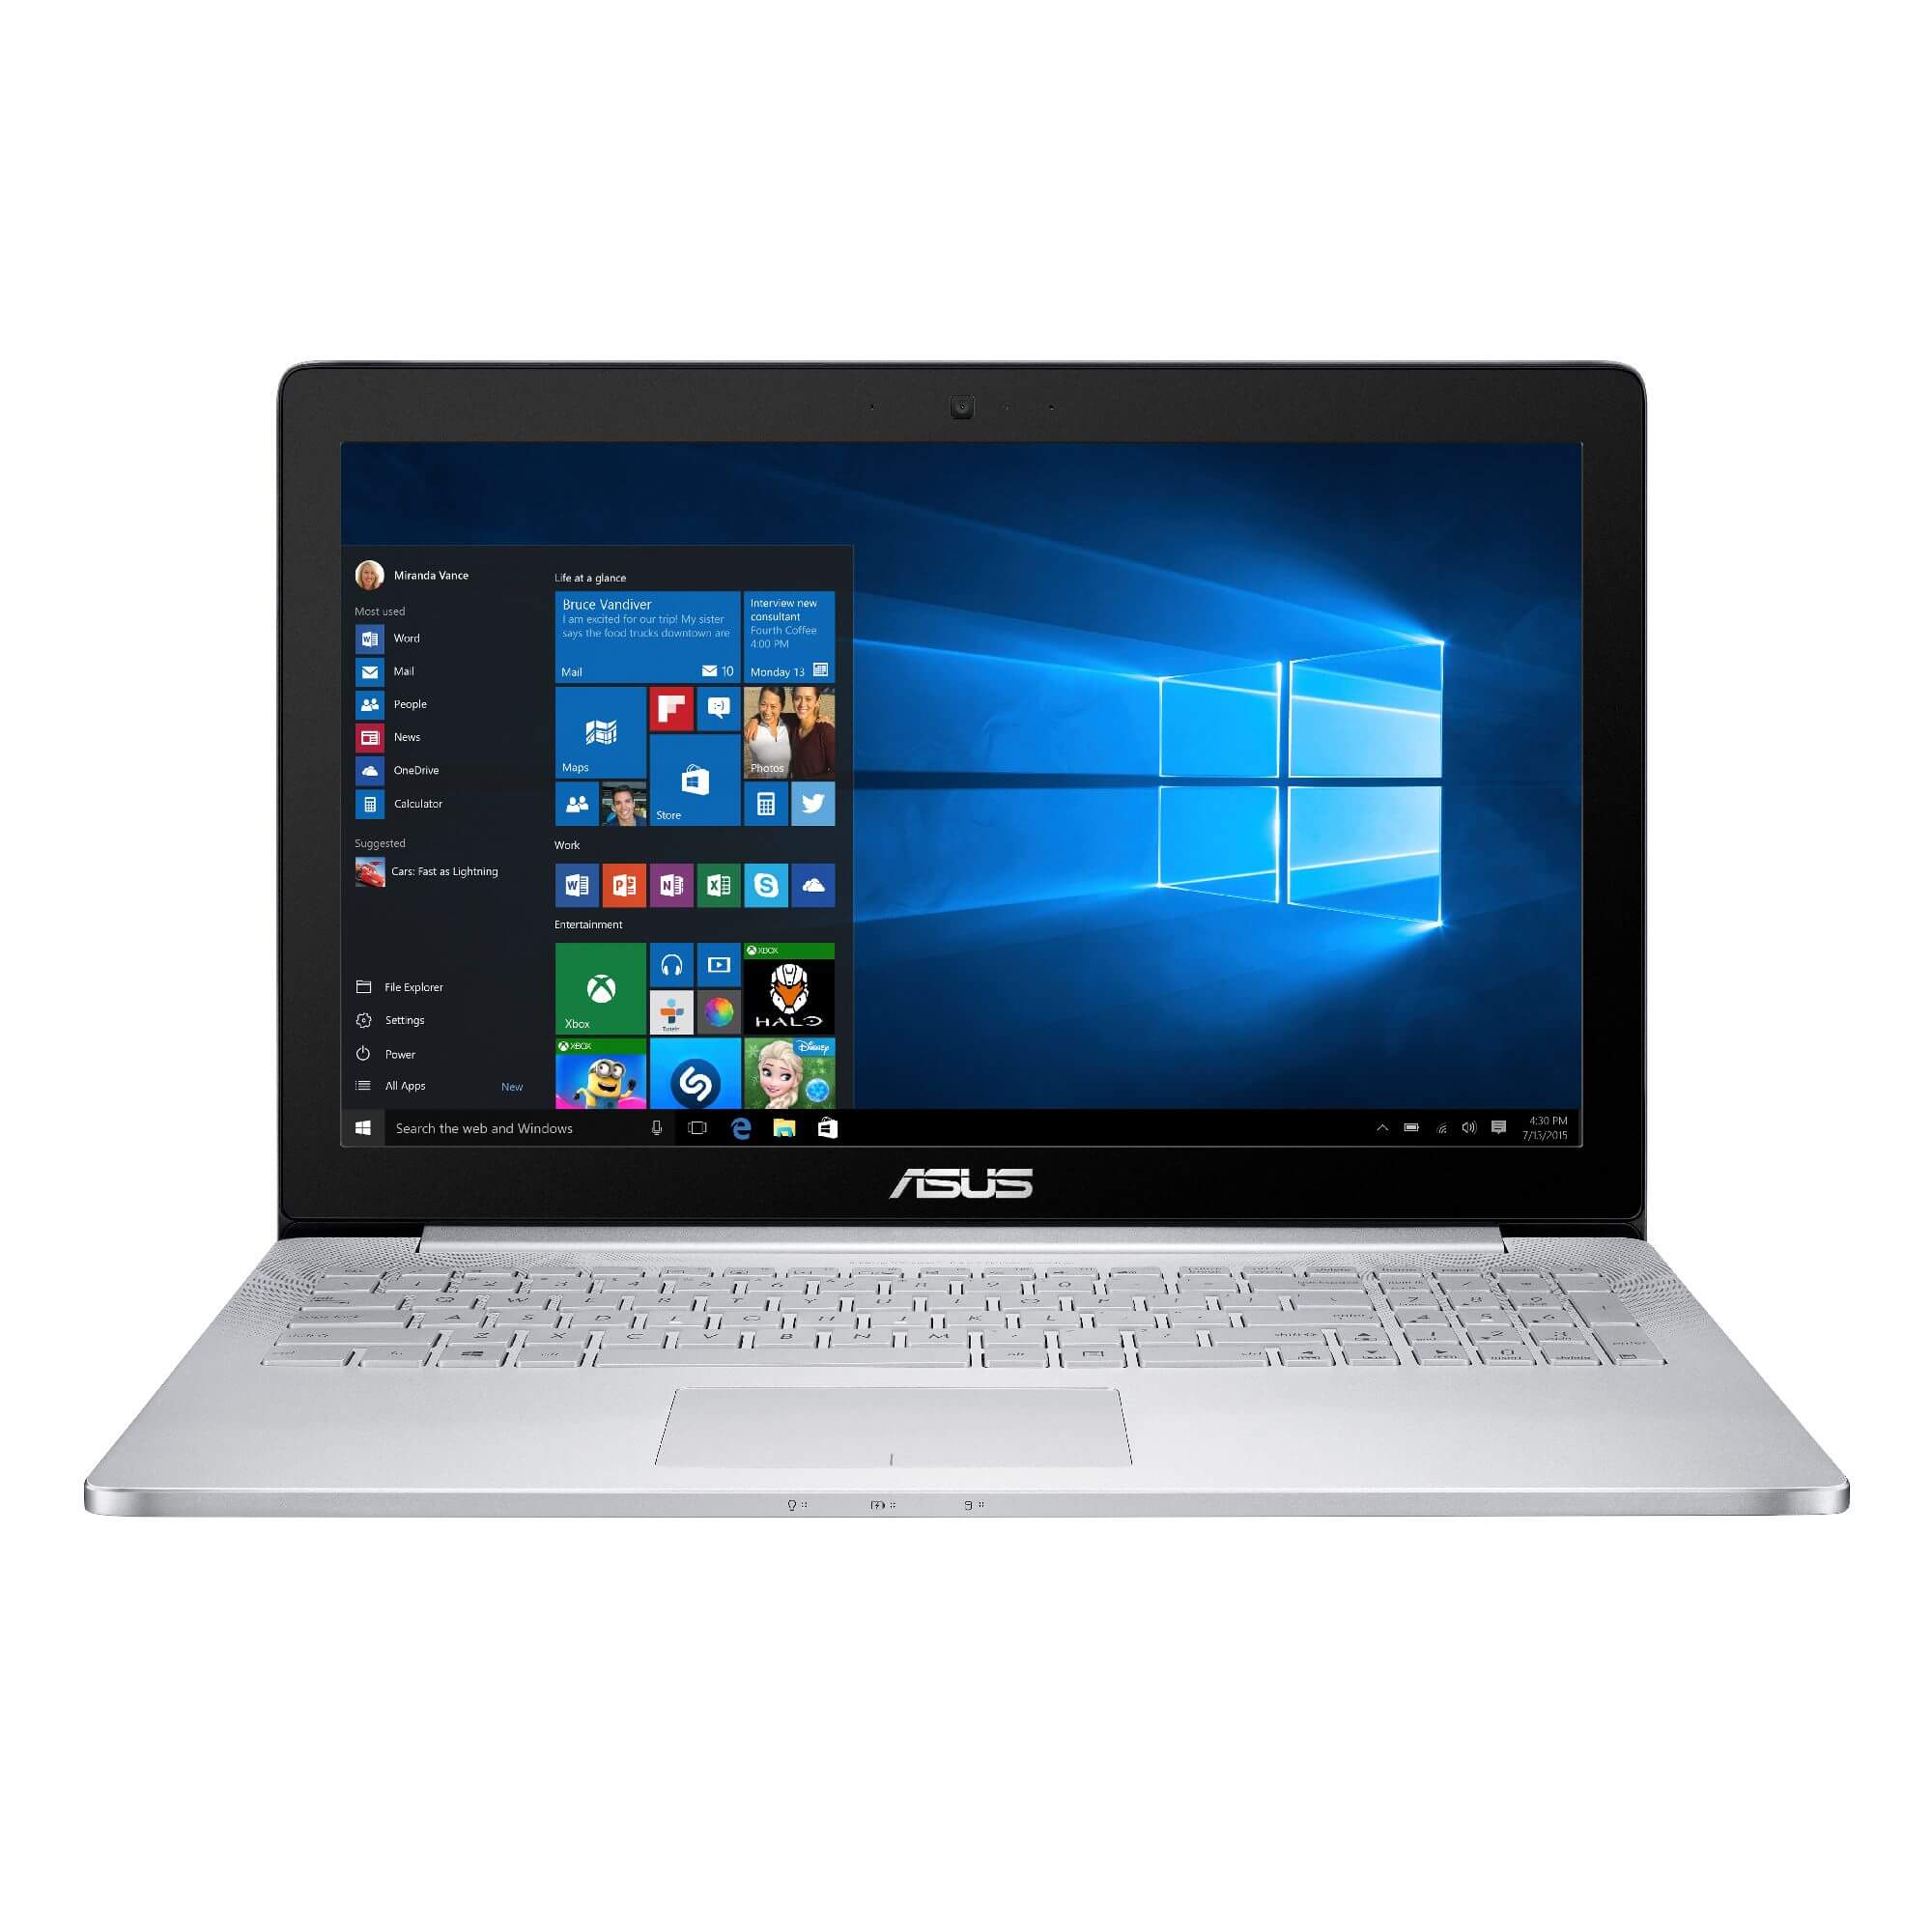  Laptop Asus UX501VW-GE004T, Intel Core i7-6700HQ, 16GB DDR4, SSD 256GB, nVidia GeForce GTX 960M, Windows 10 